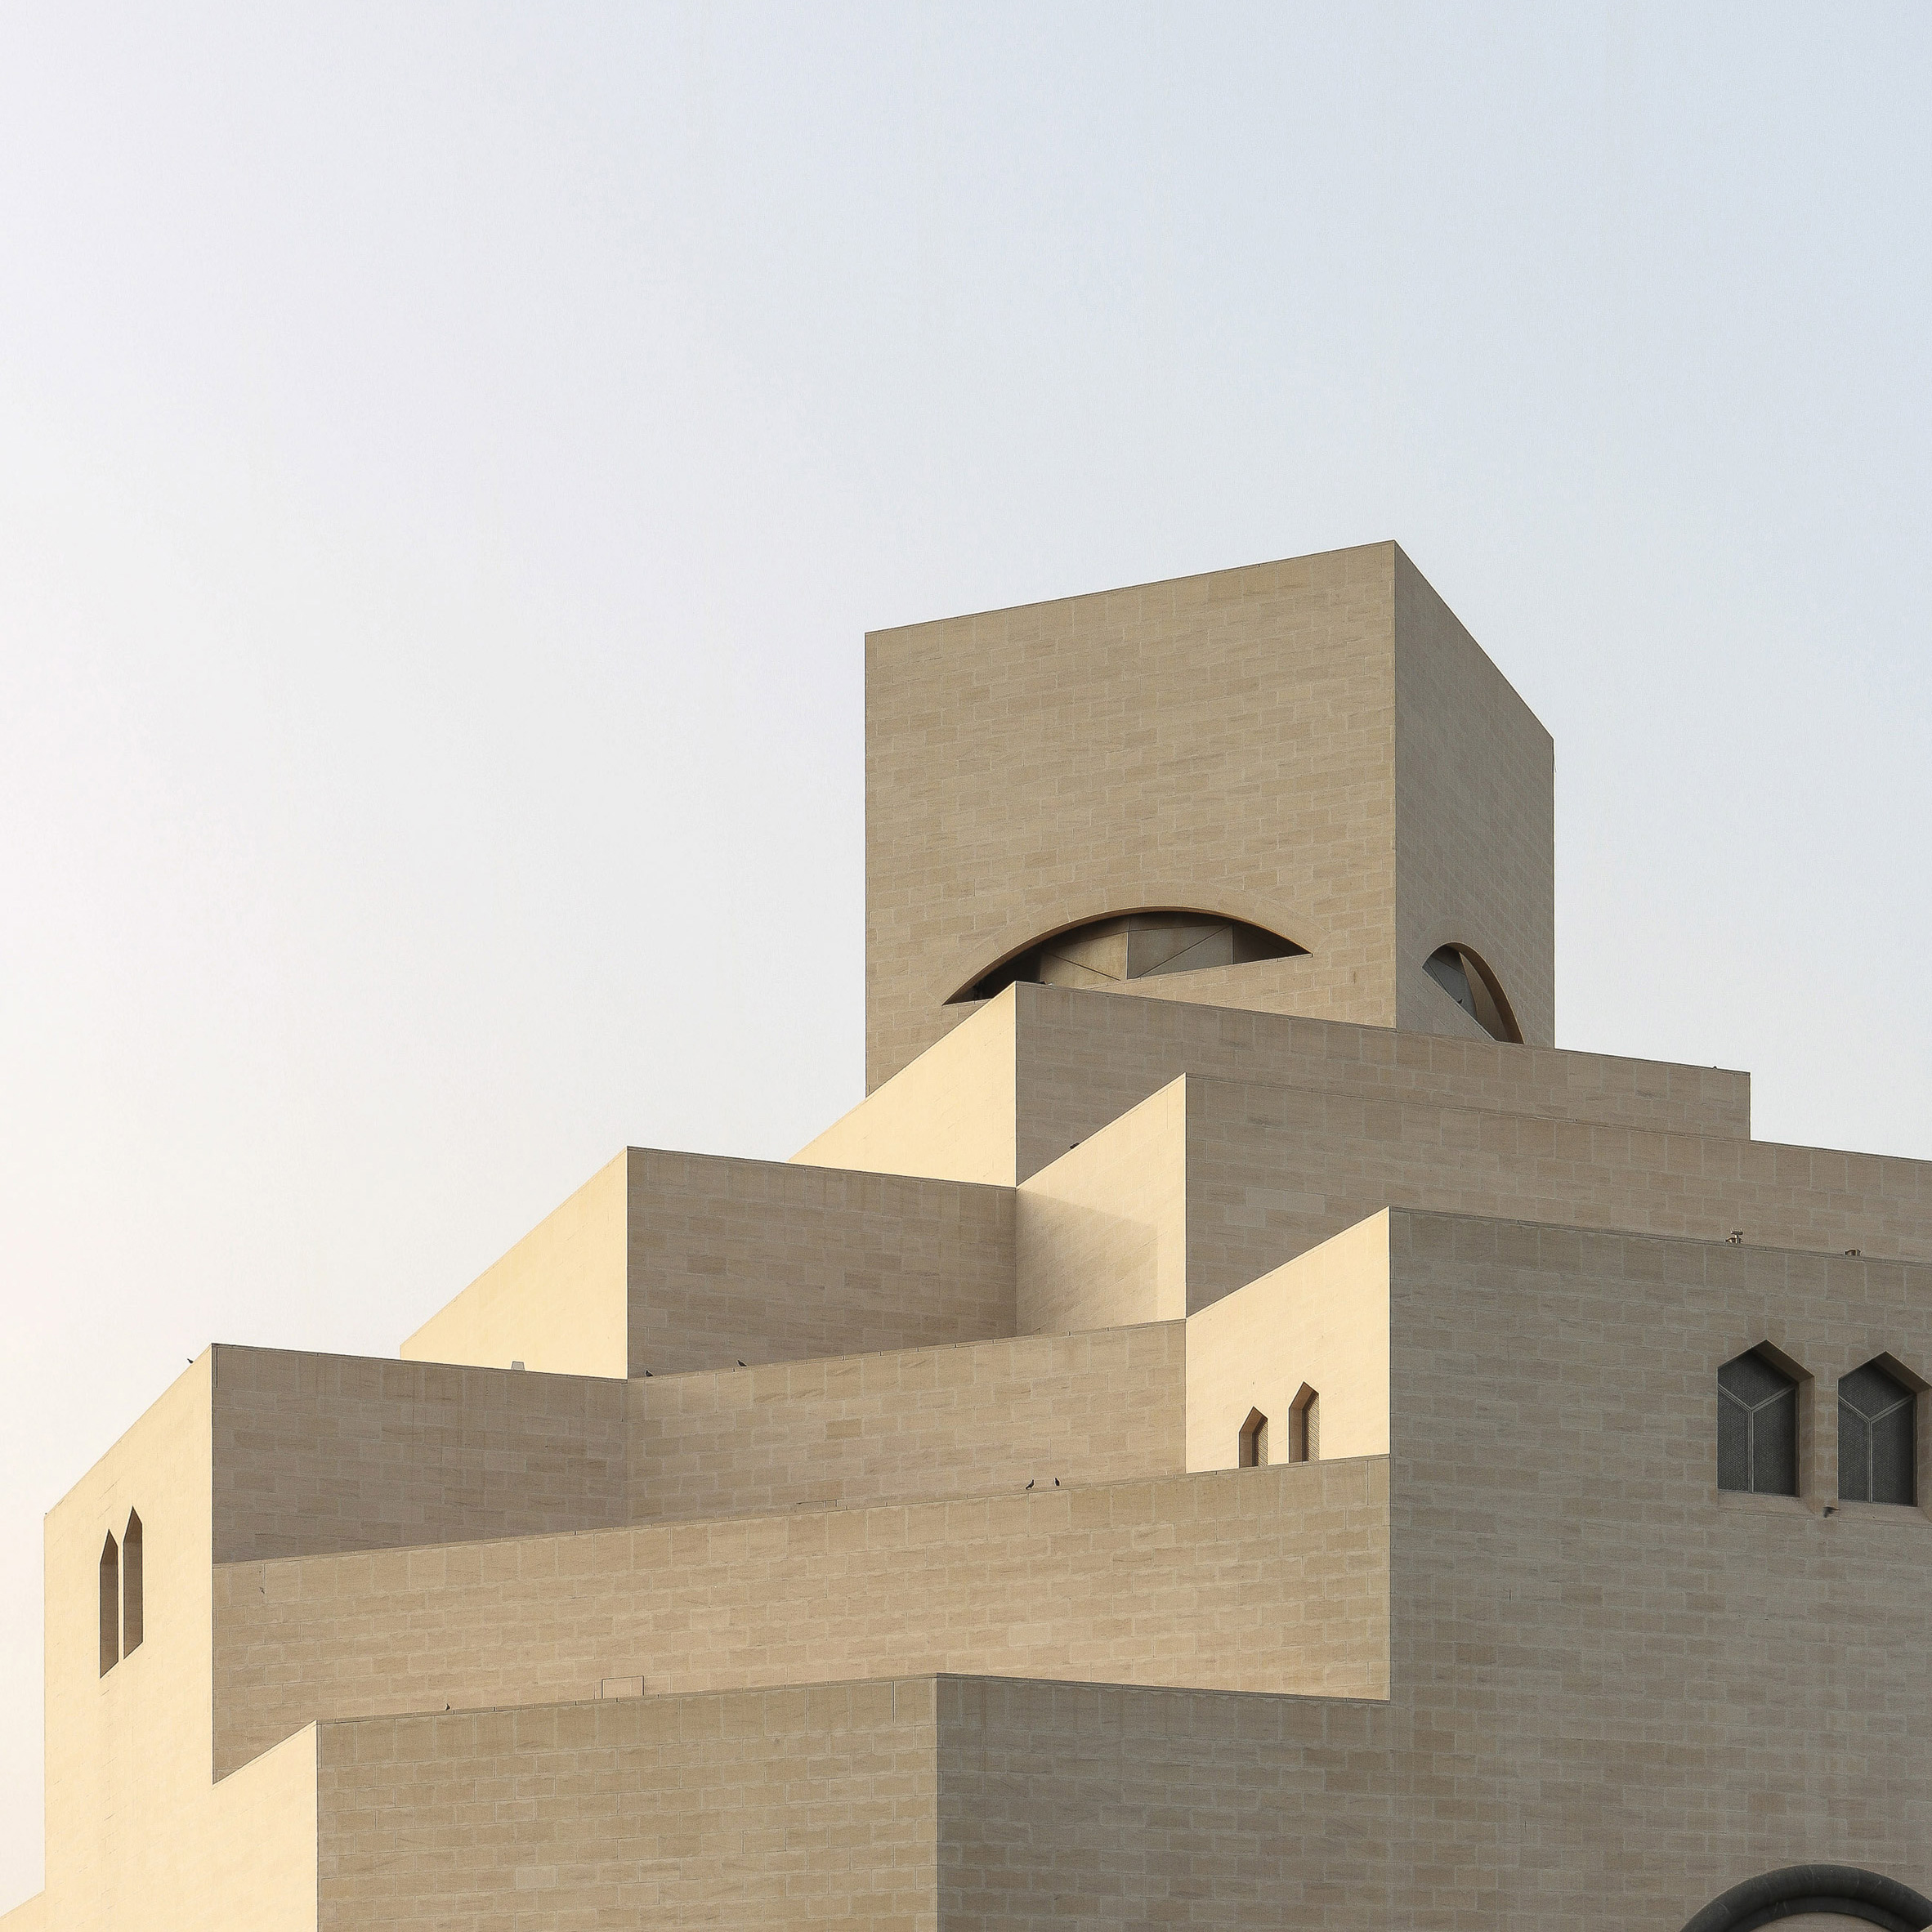 Museum of Islamic Art by IM Pei, Doha, Qatar